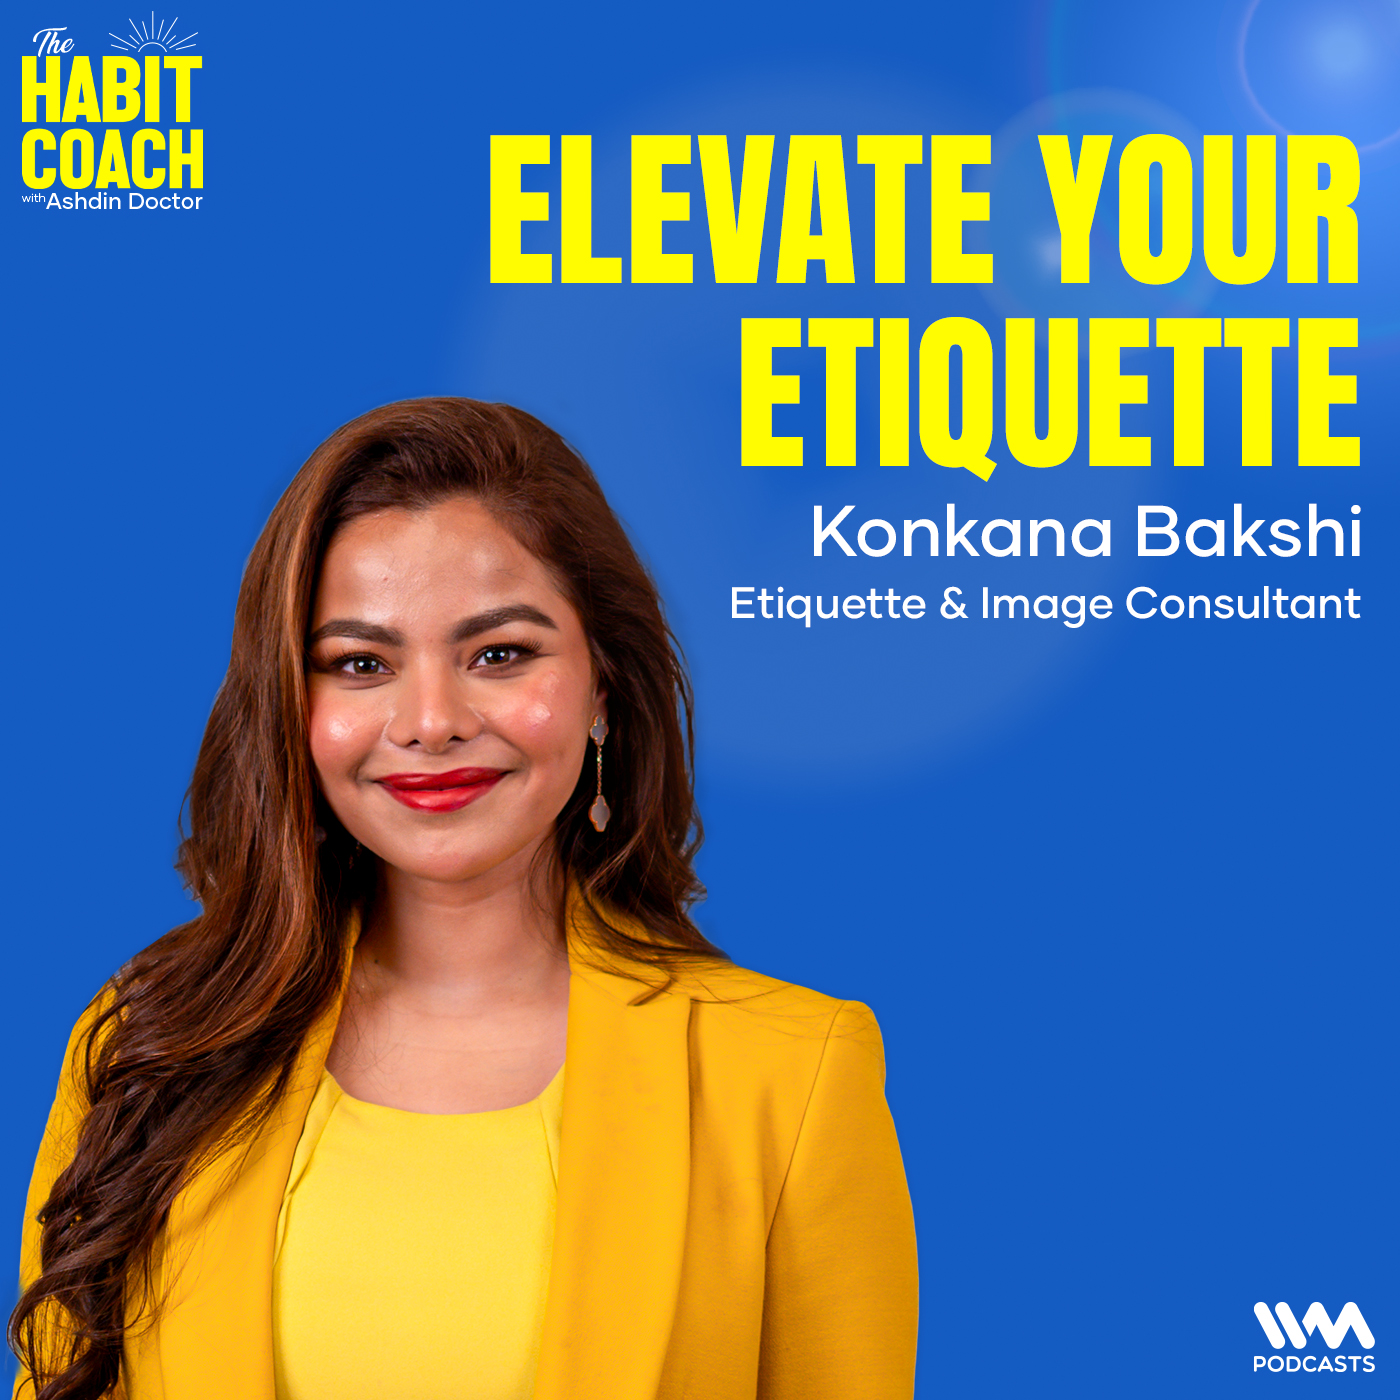 Konkana Bakshi: Elevate Your Etiquette - Etiquette & Image Consultant